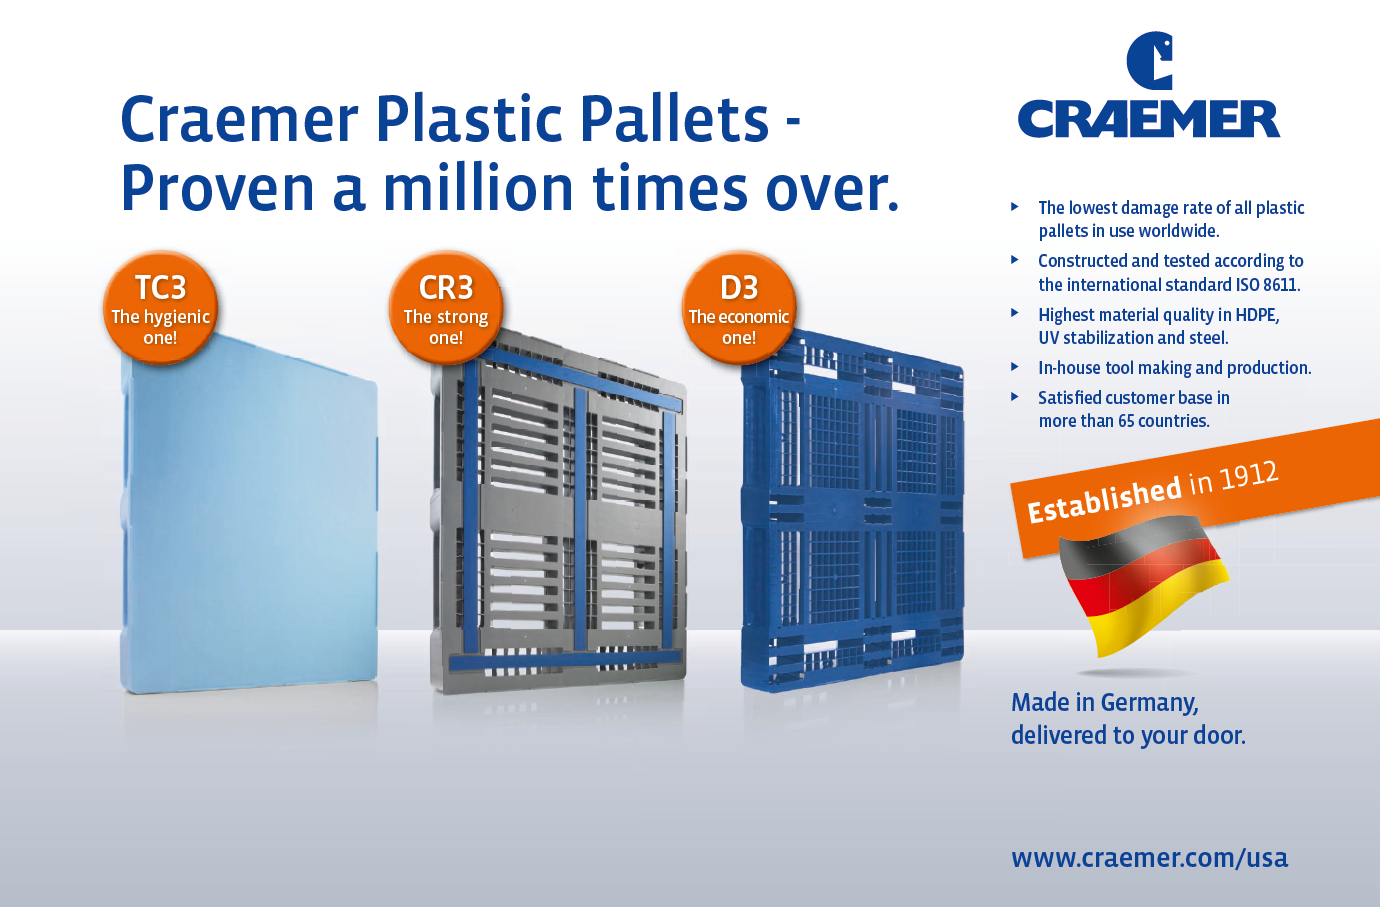 Craemer Plastic Pallets